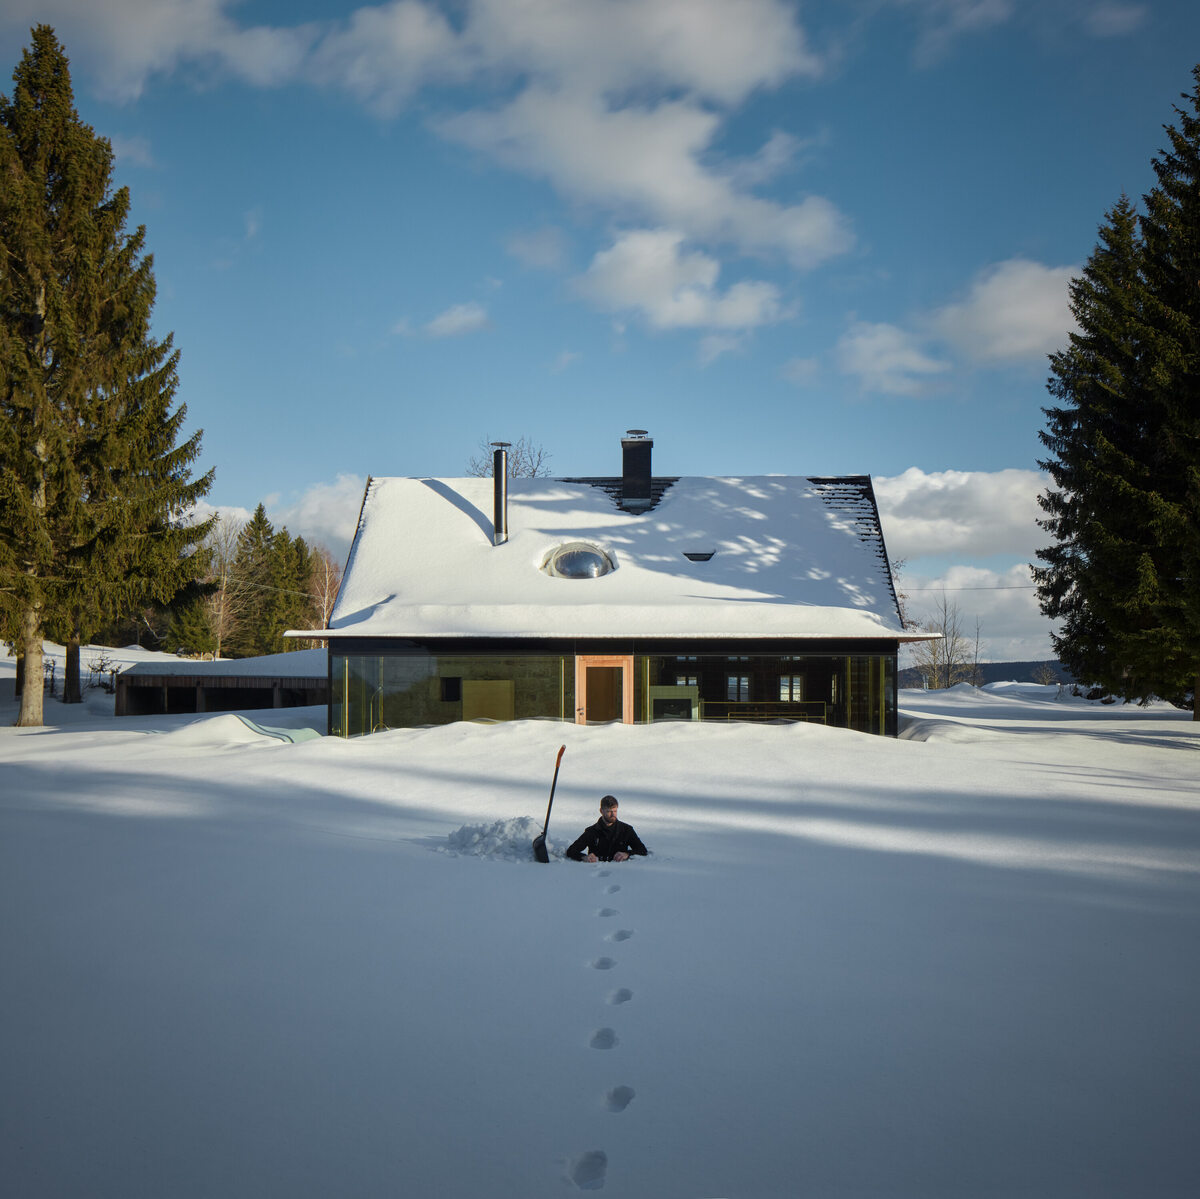 130-letni domek w górach w nowej odsłonie, projekt Mjölk Linka, Mjölk, domek w górach